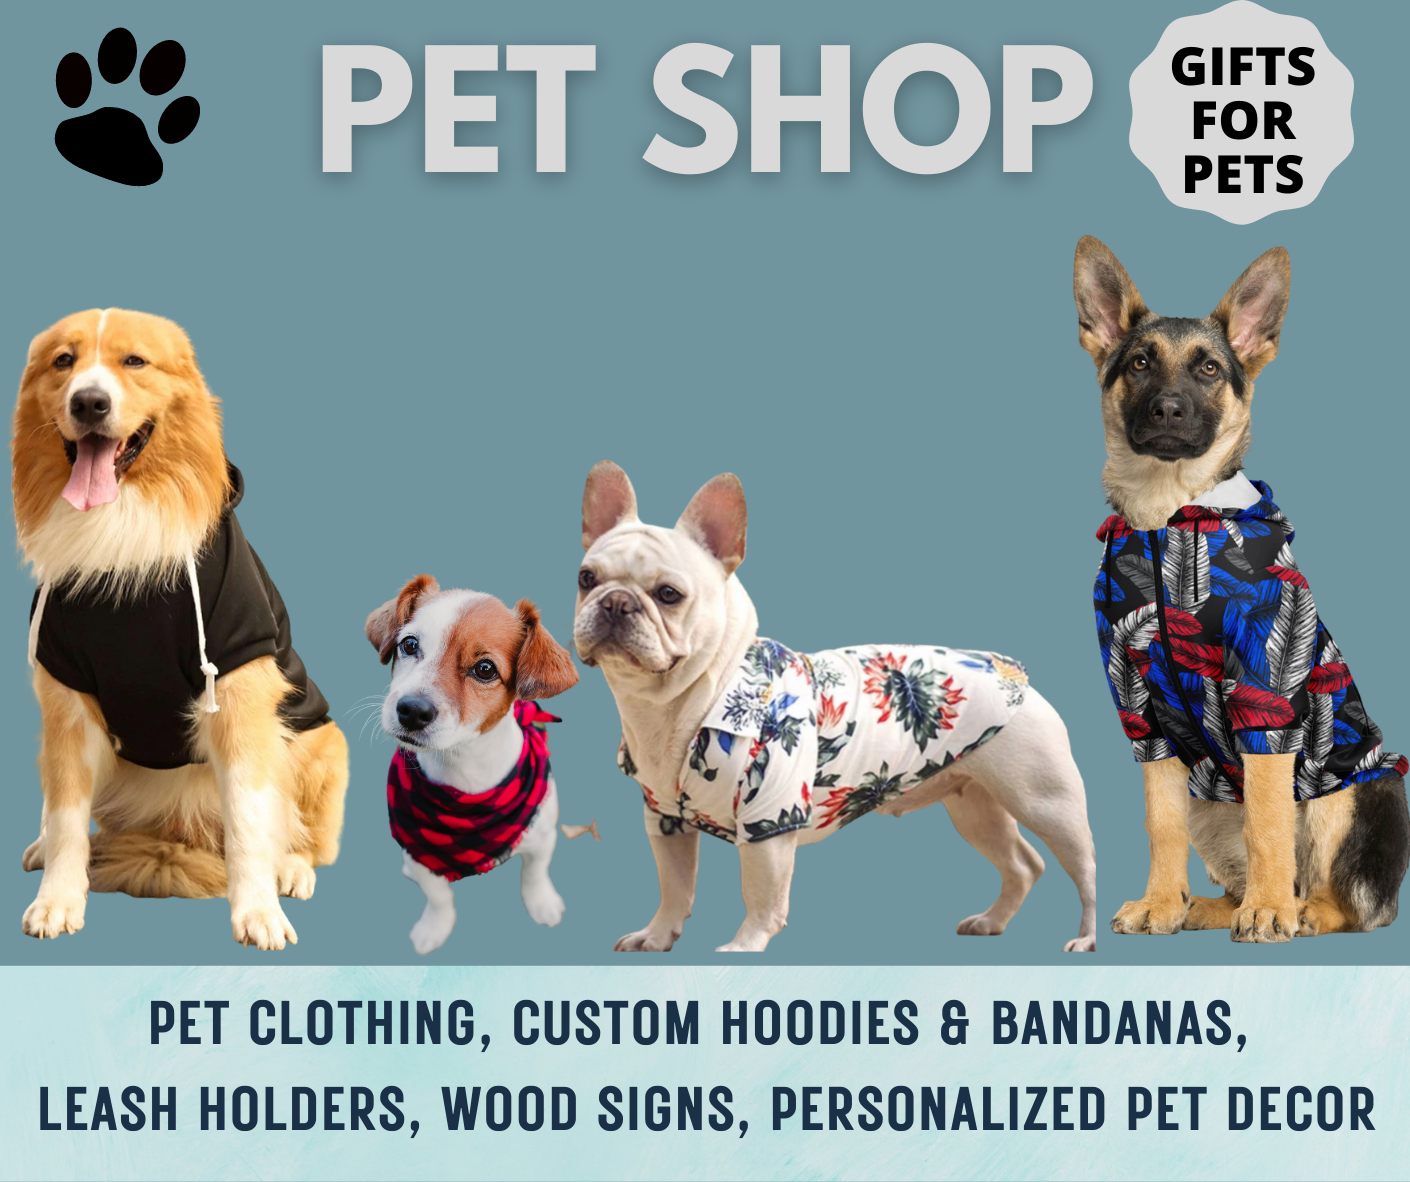 dog hoodie, dog bandana, custom dog hoodie, personalized pet decor, dog wood sign, dog leash holder